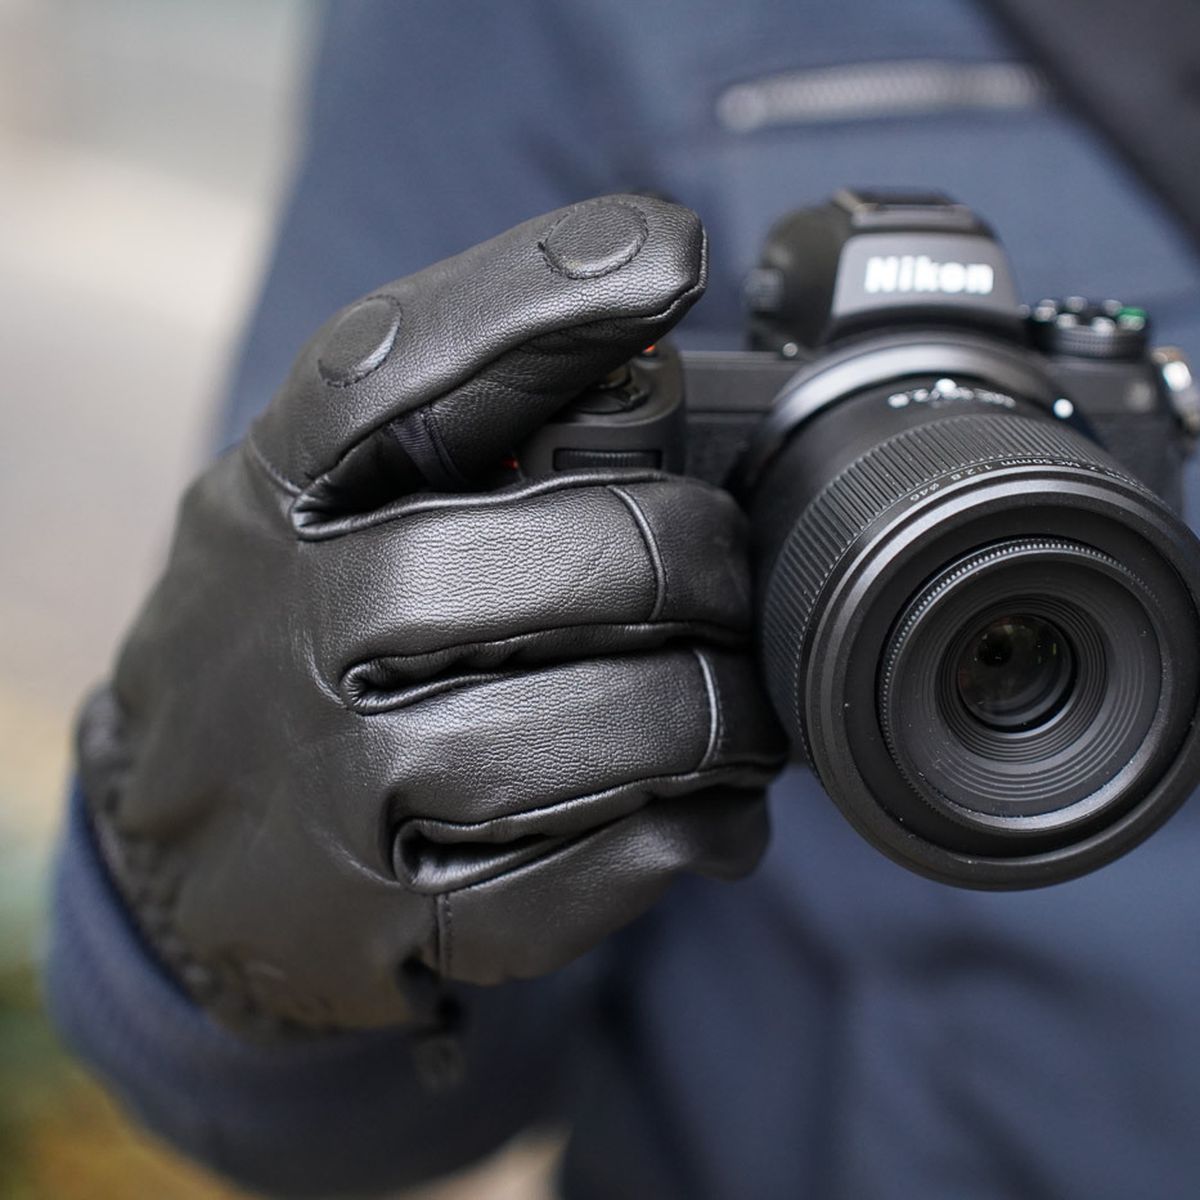 Vallerret Hatchet Leather Glove Black, Leder-Fotohandschuhe S Schwarz